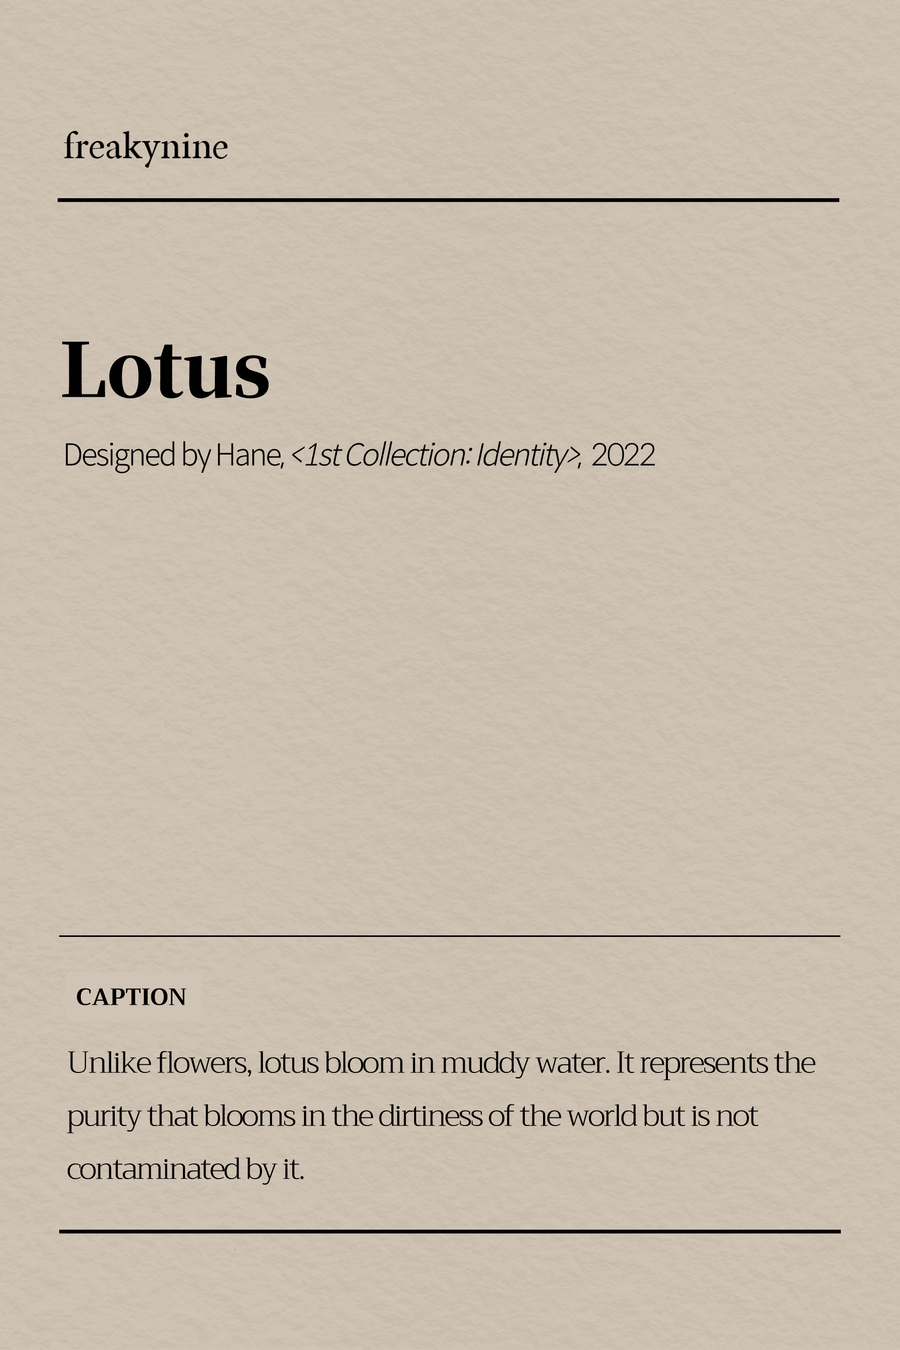 (Hane) Lotus (2EA) - freakynine